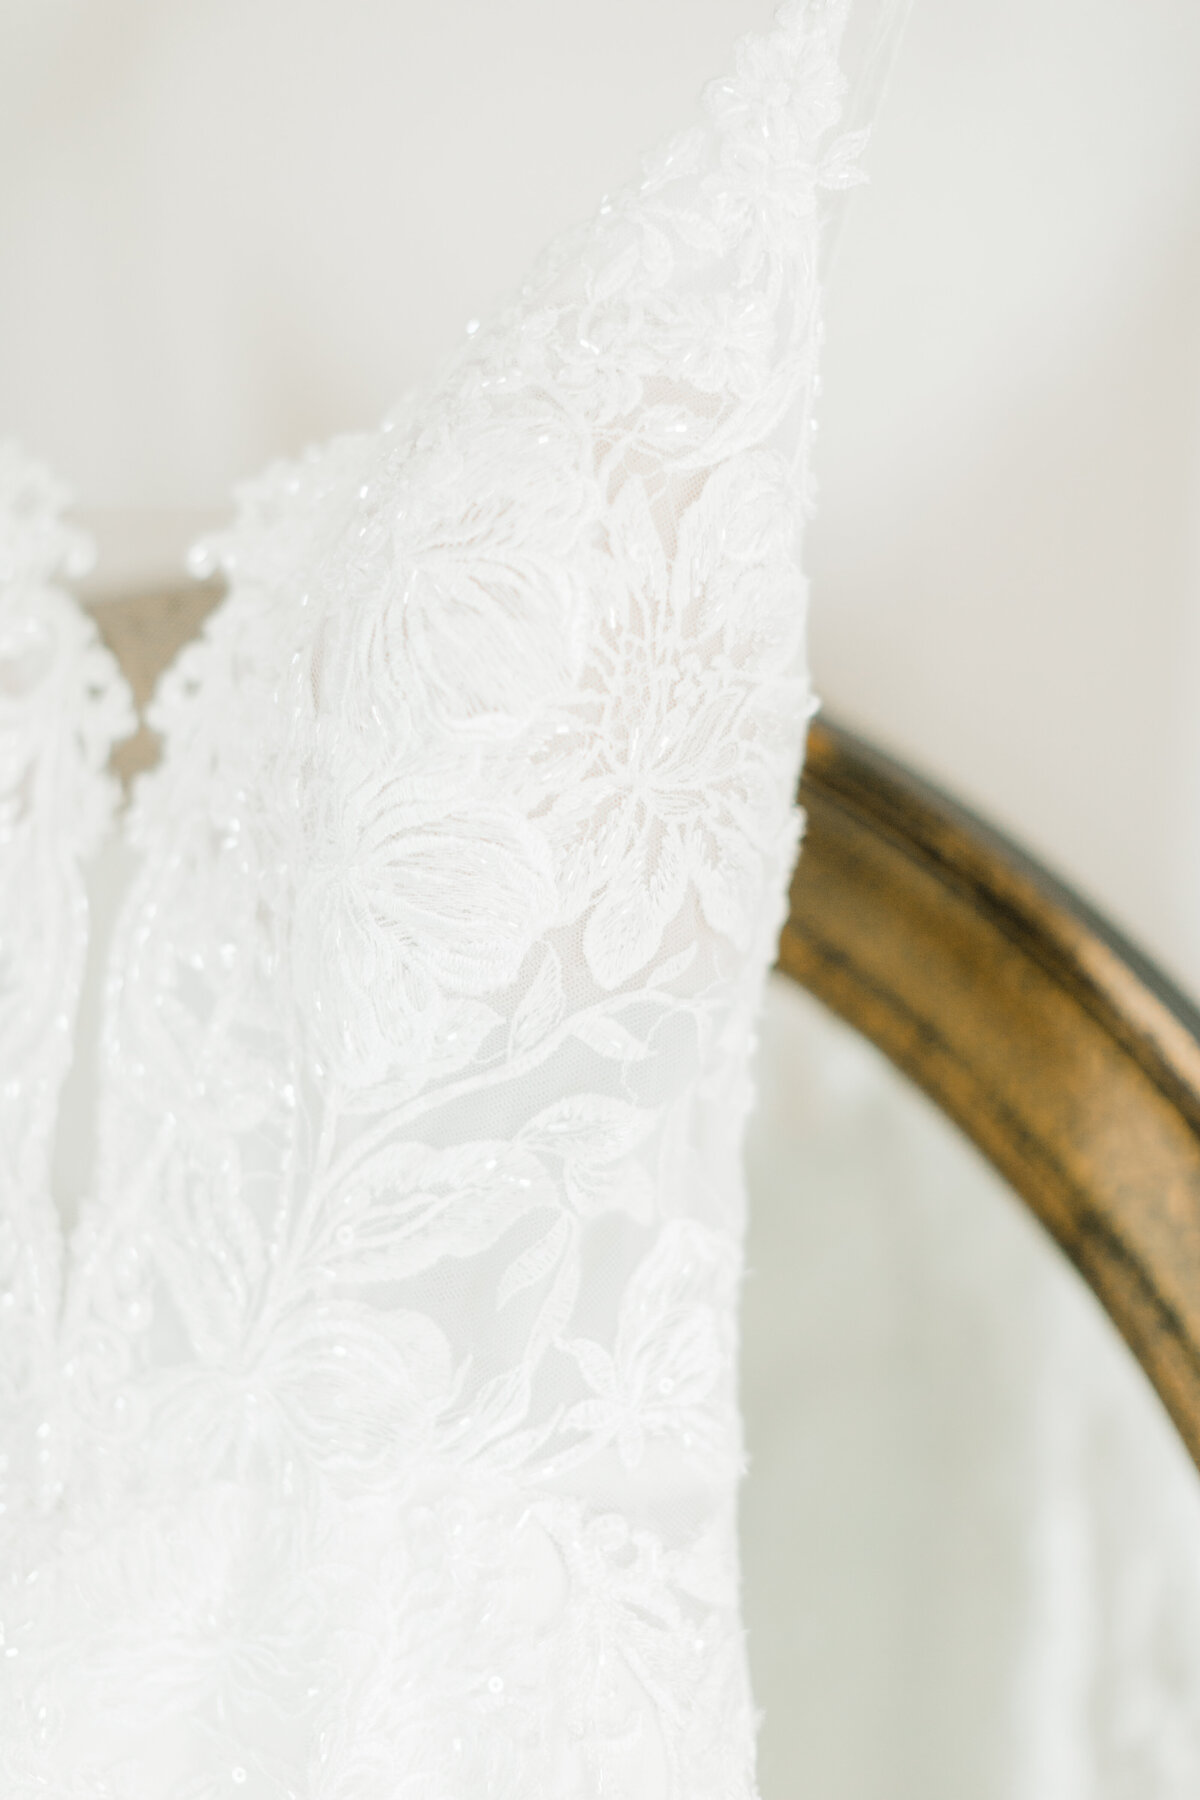 lace wedding dress details